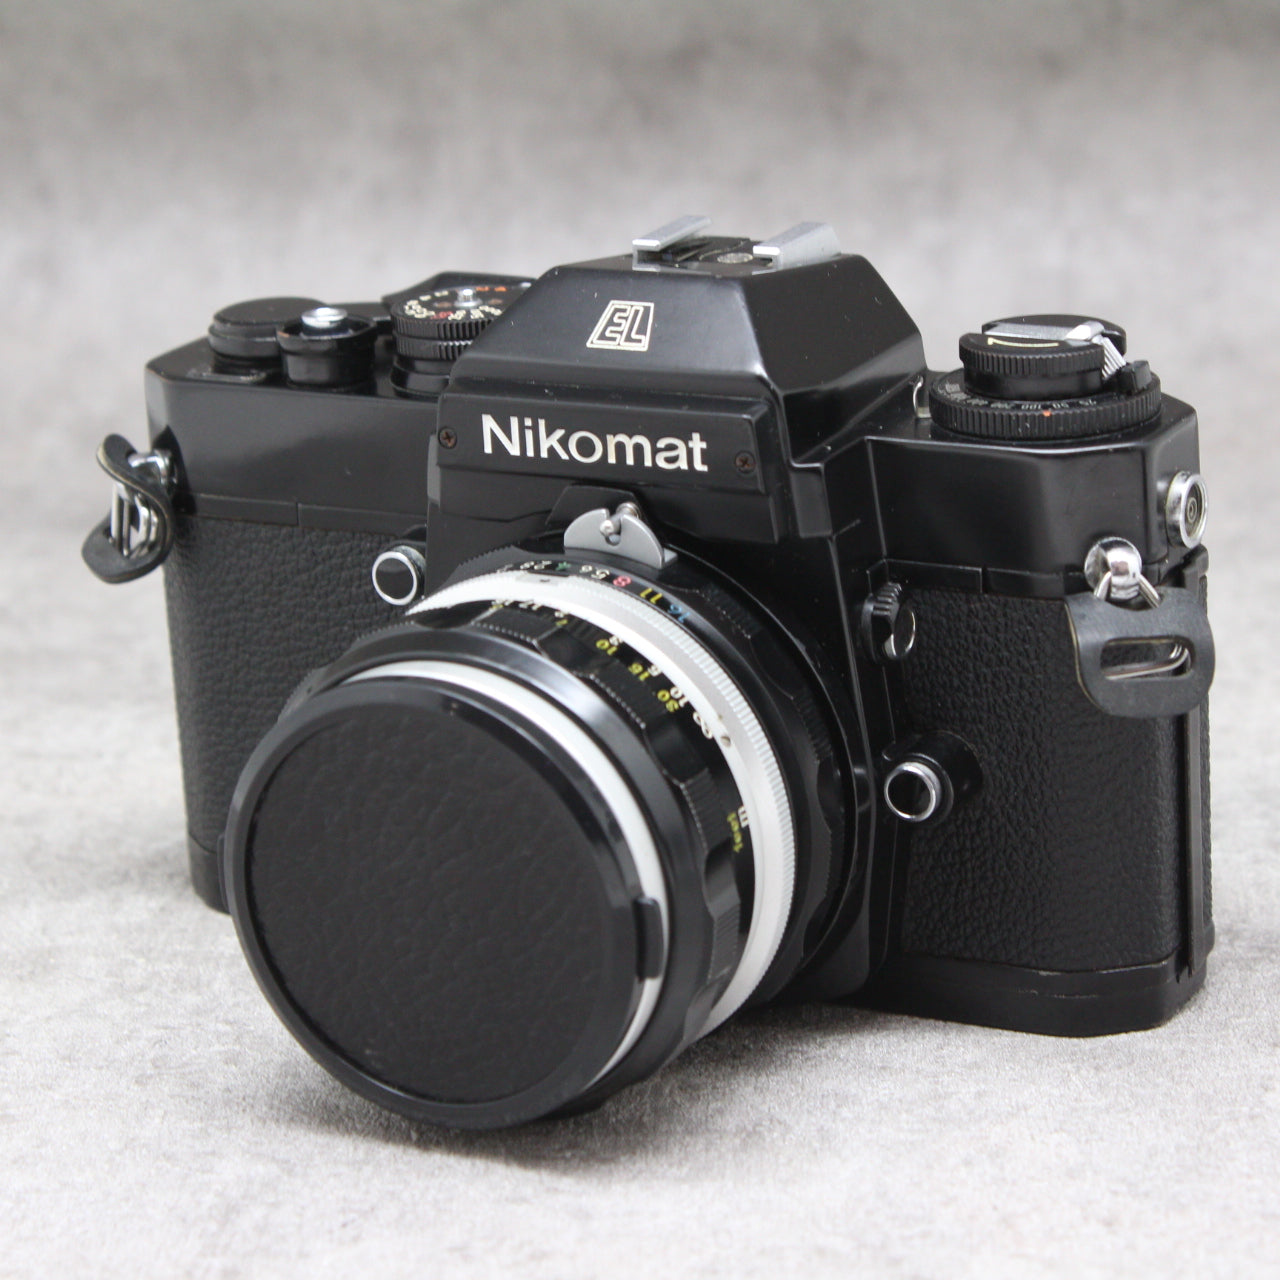 スマホ/家電/カメラNikon Nikomat EL + Nikkor50mm f1.4